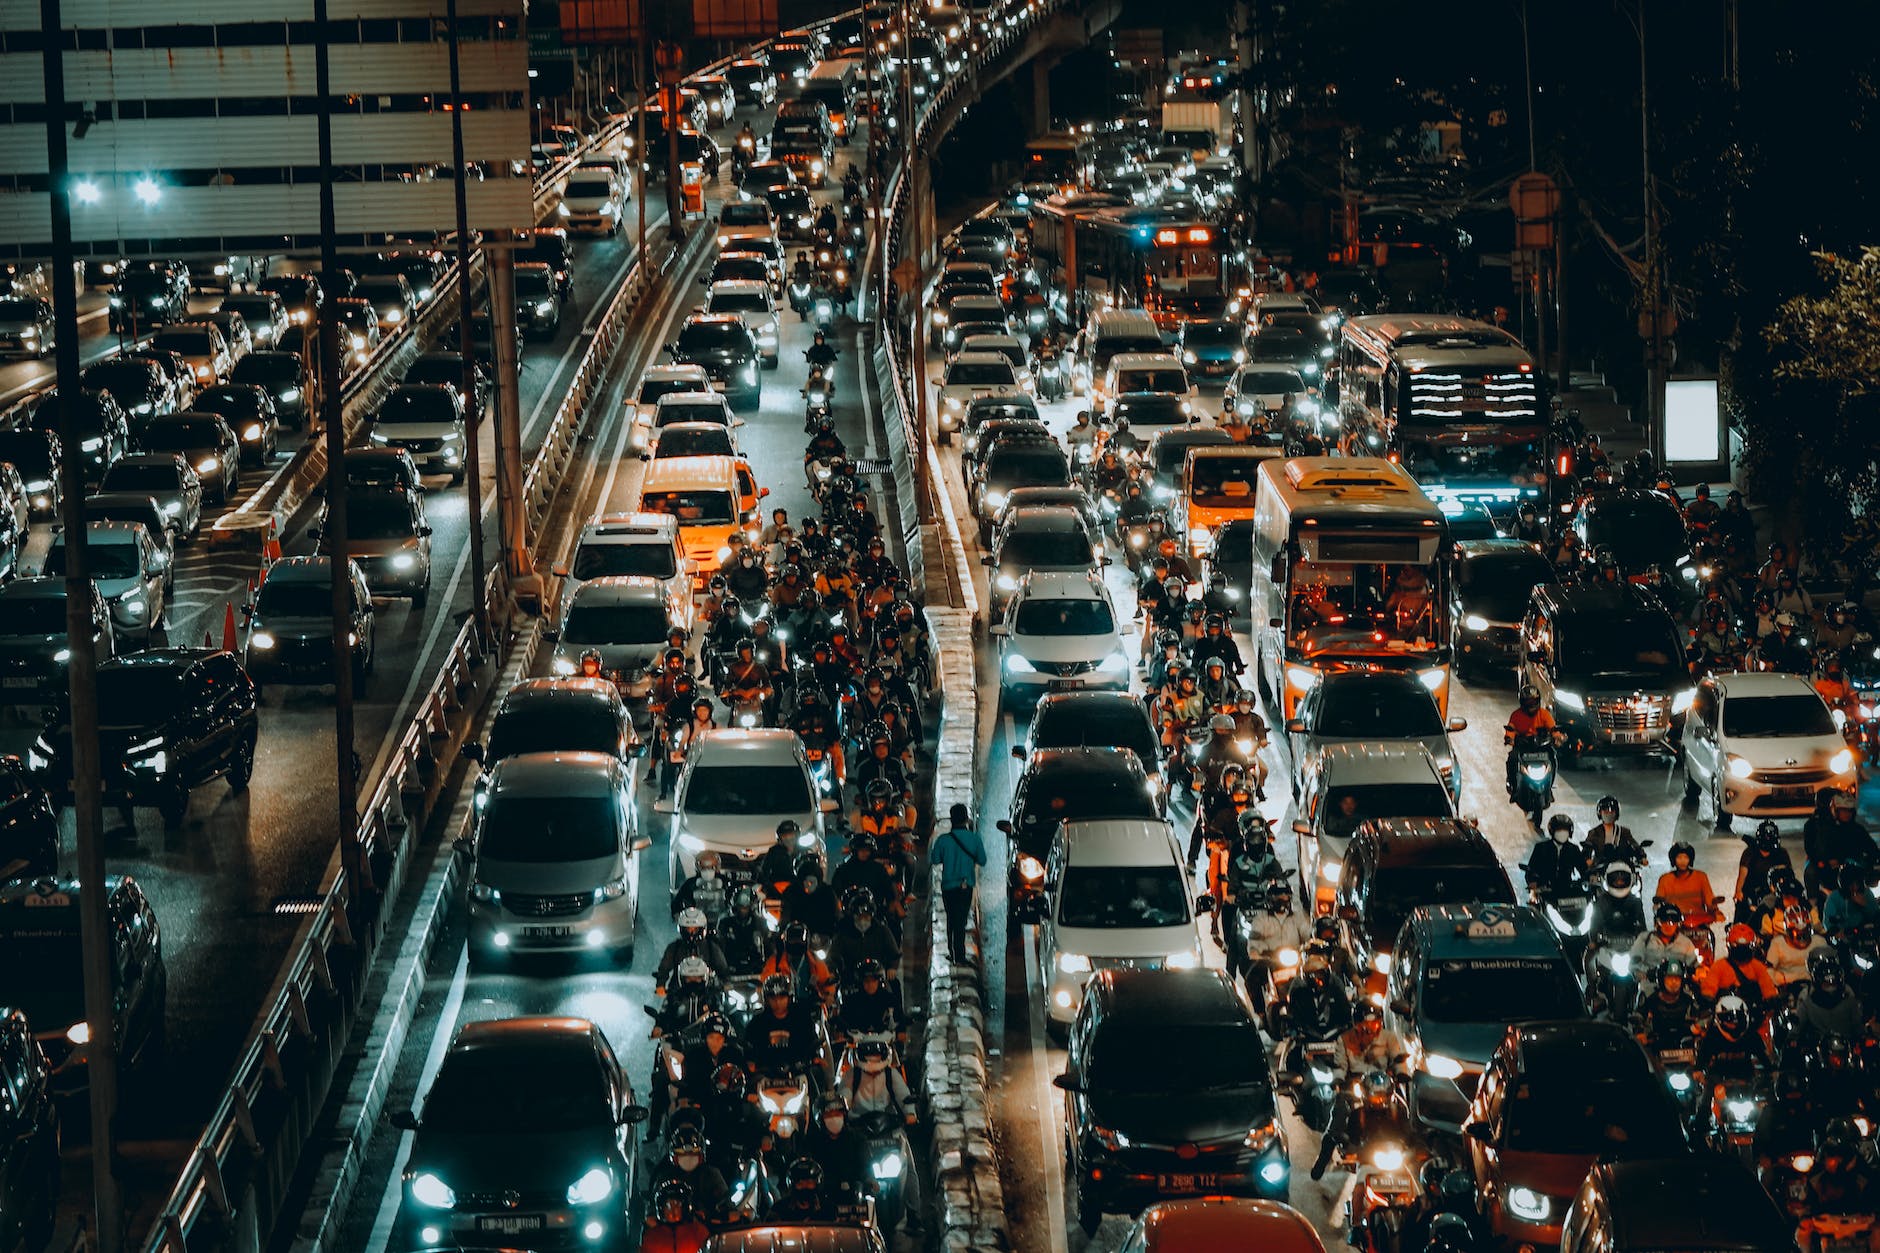 traffic jam on a multi lane highway at night